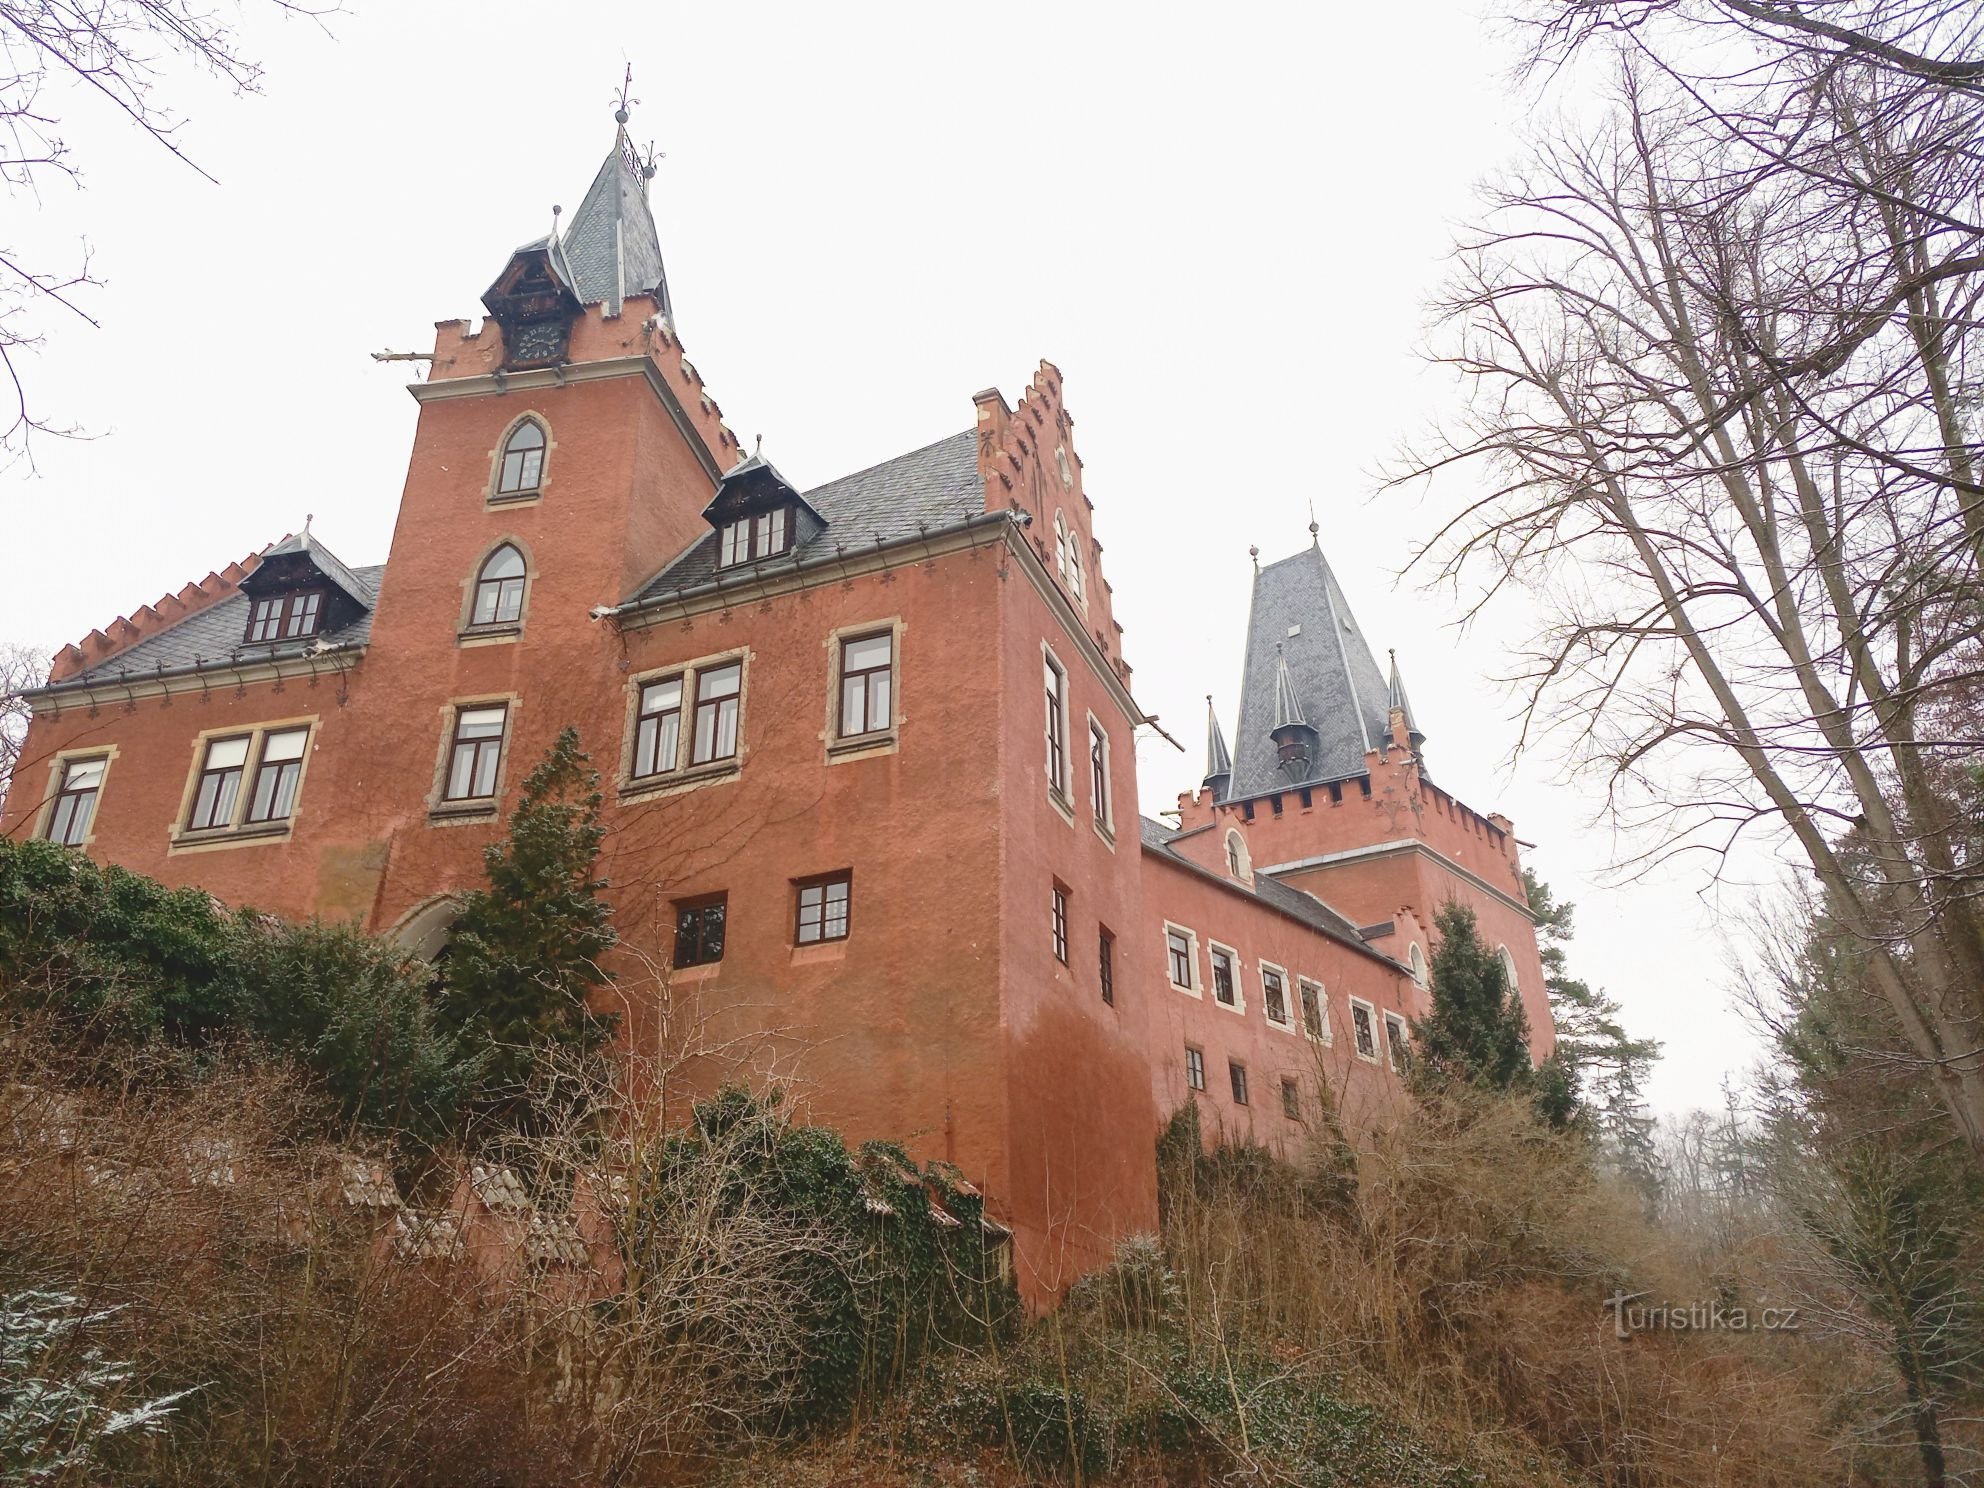 3. Nazwa zamku Červený Hrádek pochodzi prawdopodobnie od pokrycia lub koloru tynku